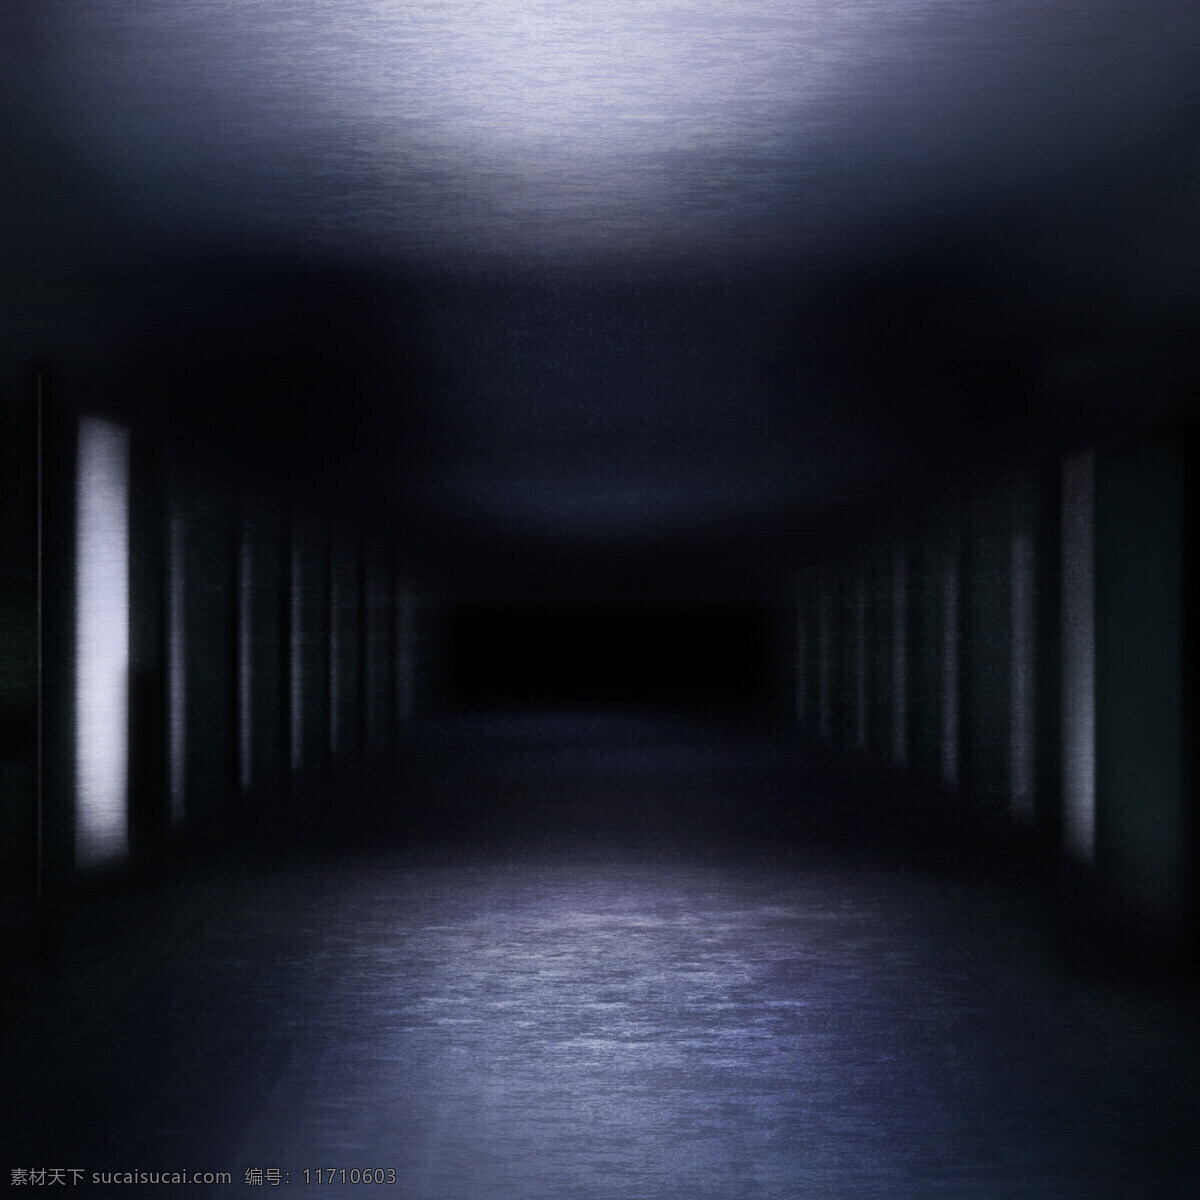 时空隧道背景 隧道 穿越 长廊 地下室 背景 背景图片 画布 走廊 桌面背景 唯美背景 ipad背景 黑色